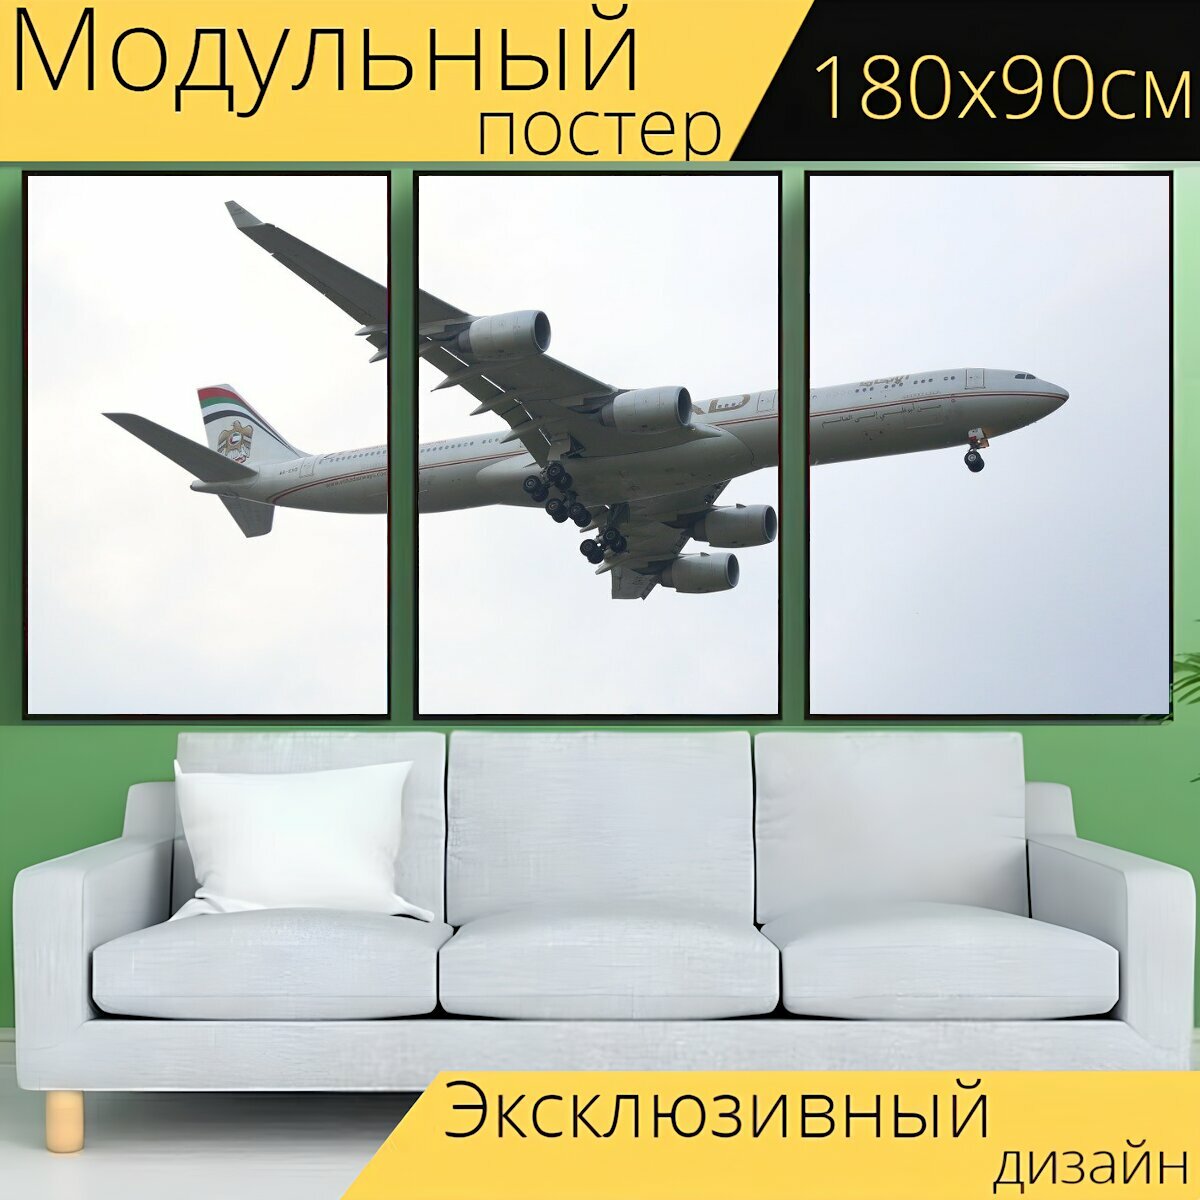 Модульный постер "Самолет турбины гигант" 180 x 90 см. для интерьера